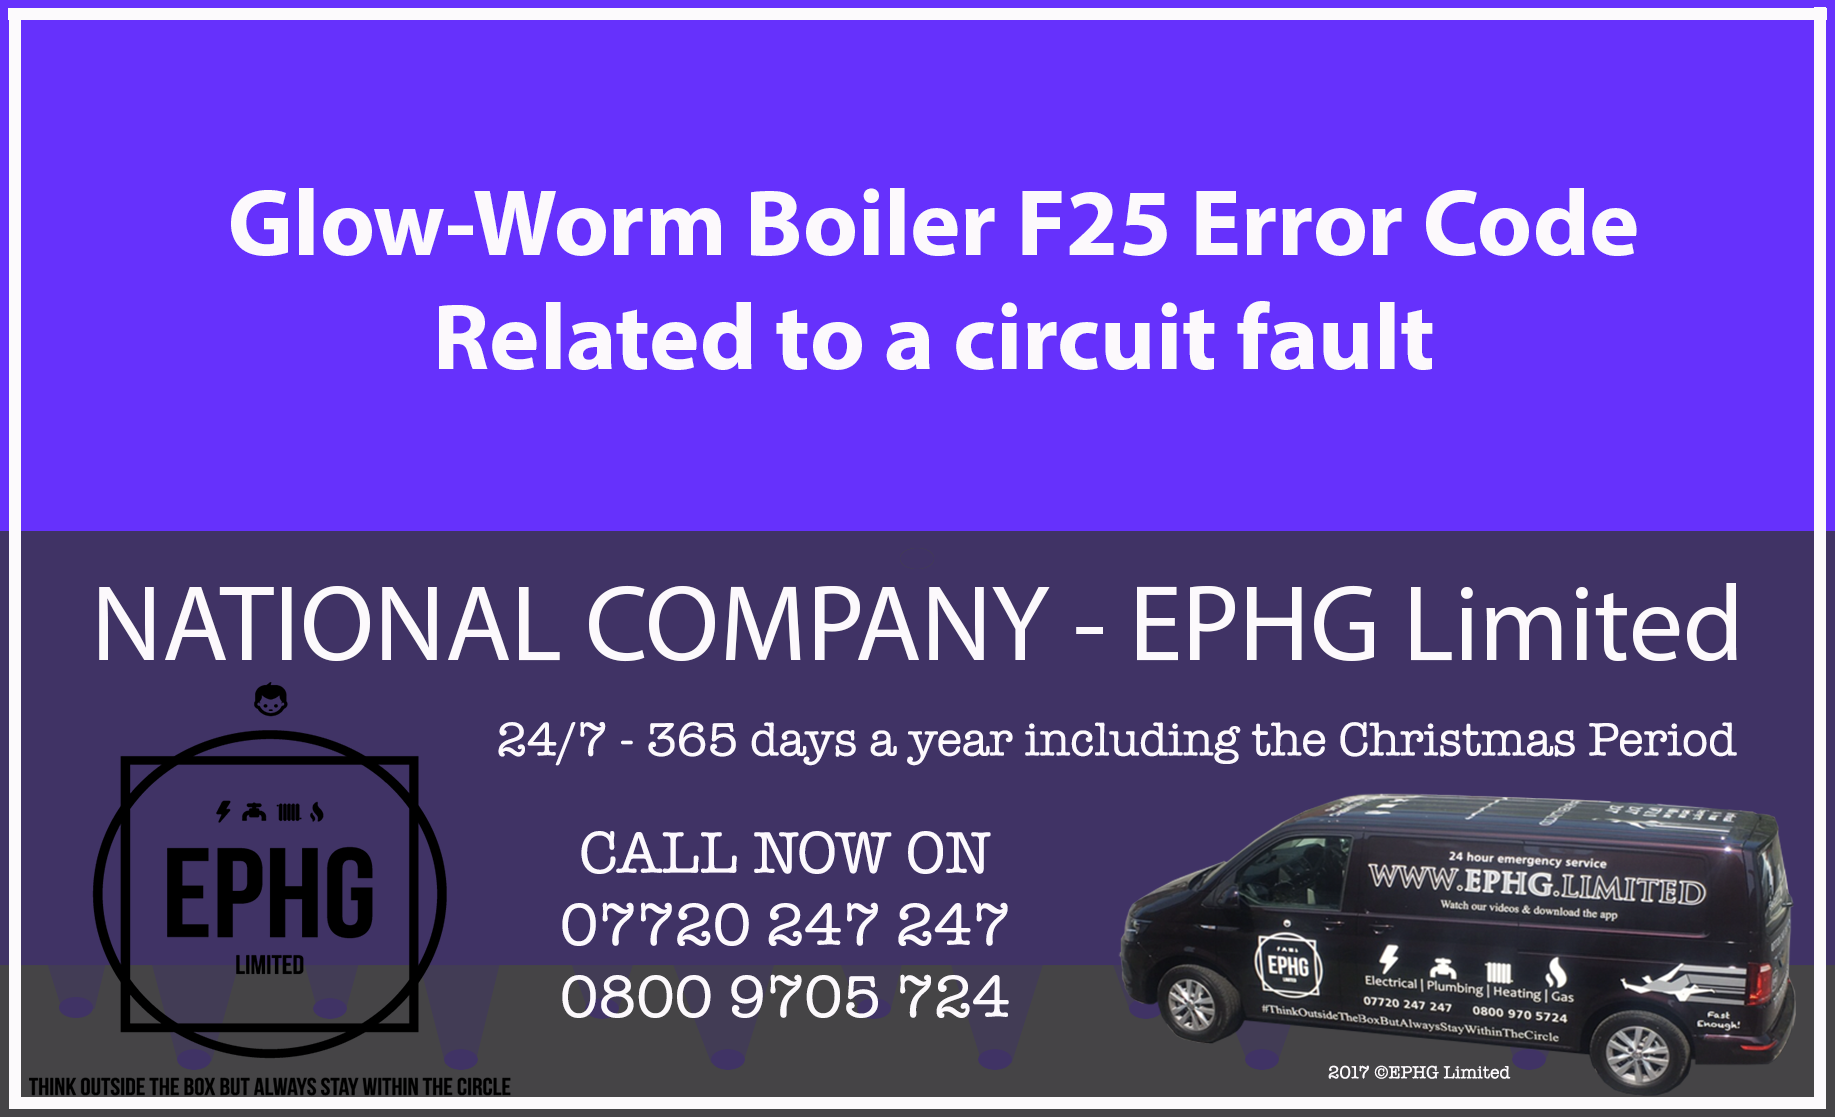 Glow-Worm boiler error code F25